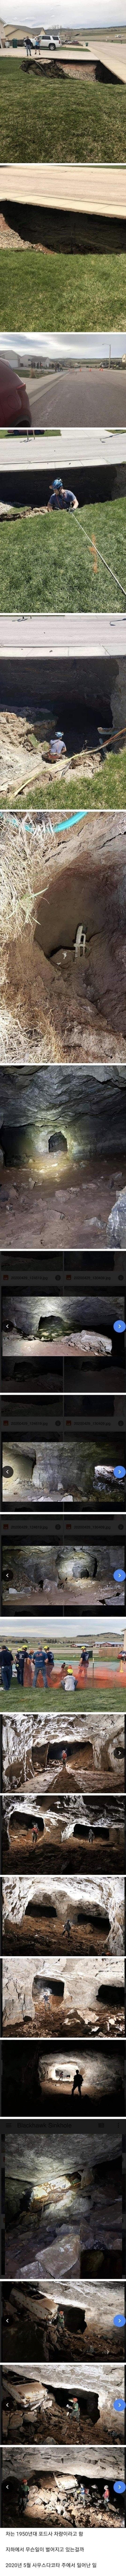 미국 싱크홀로 발견된 동굴.jpg